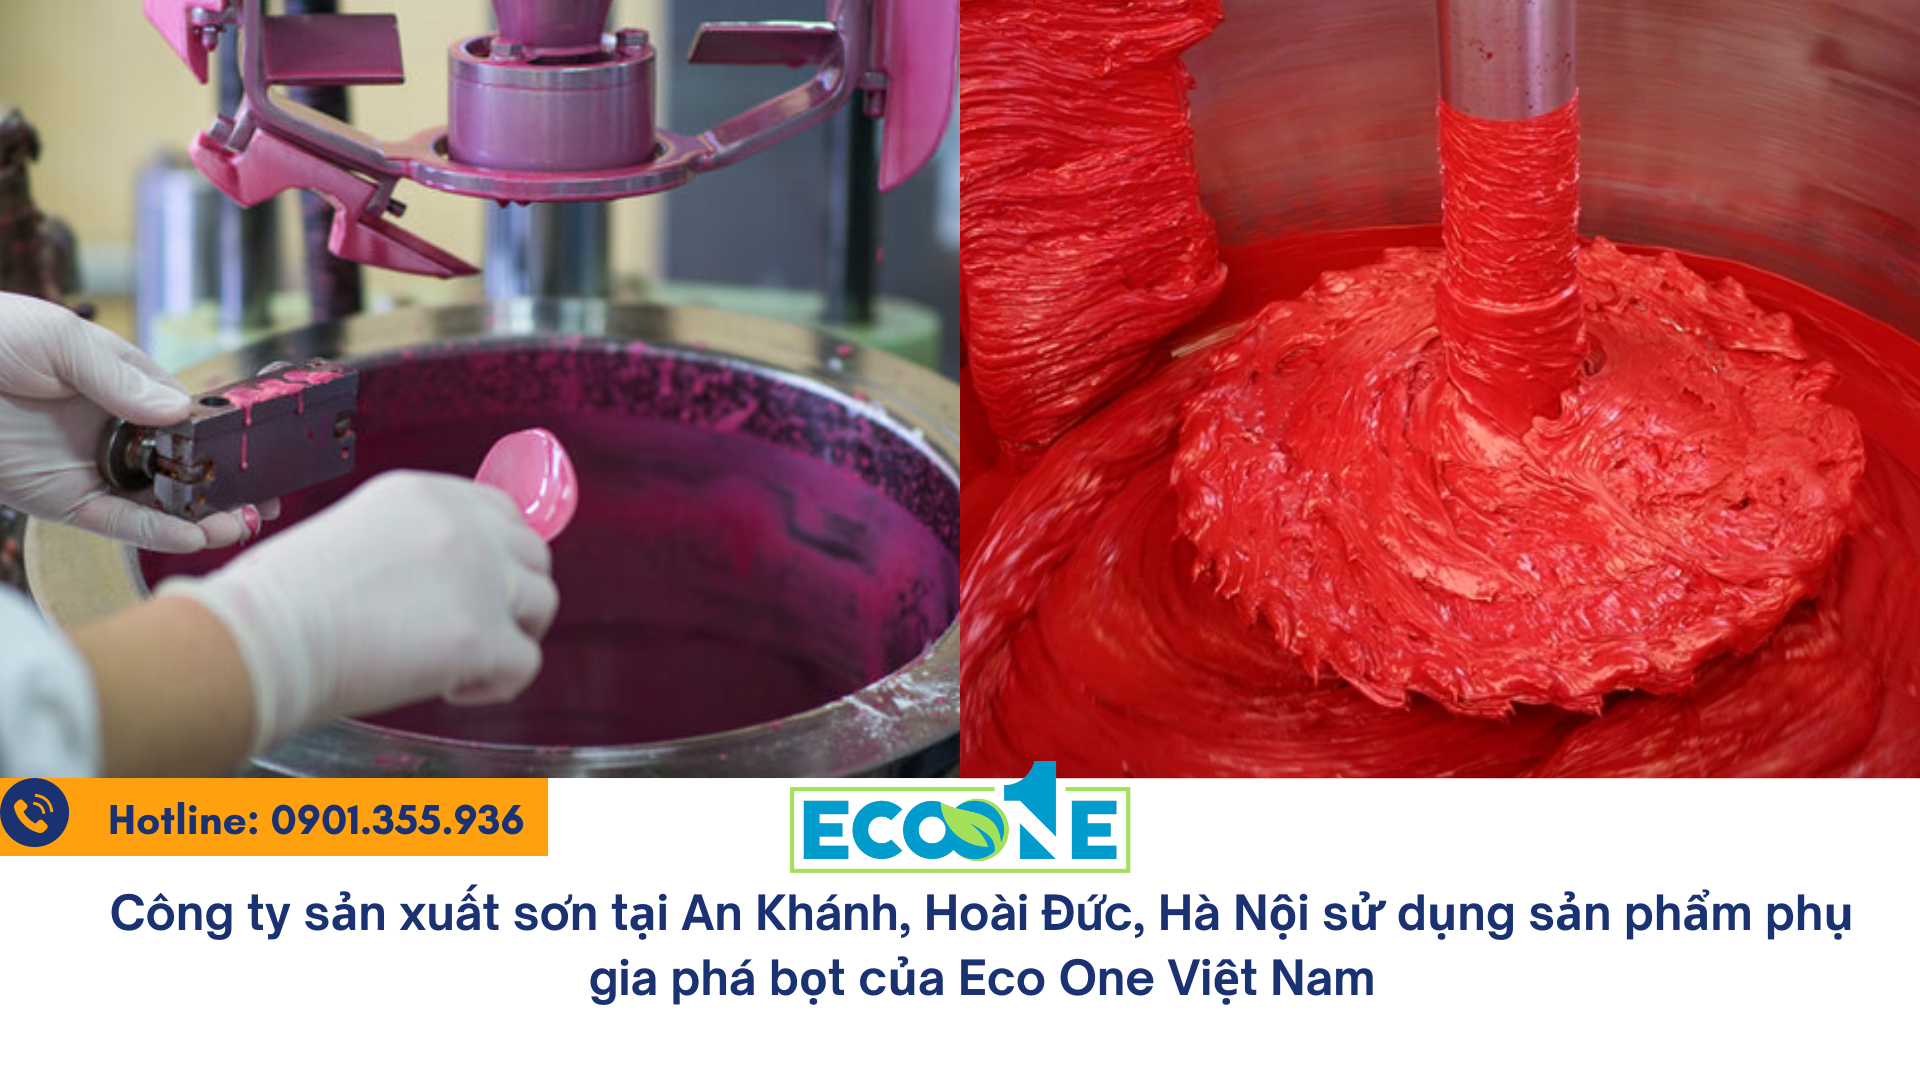 Công ty sản xuất sơn tại An Khánh, Hoài Đức, Hà Nội sử dụng sản phẩm phụ gia phá bọt của Eco One Việt Nam